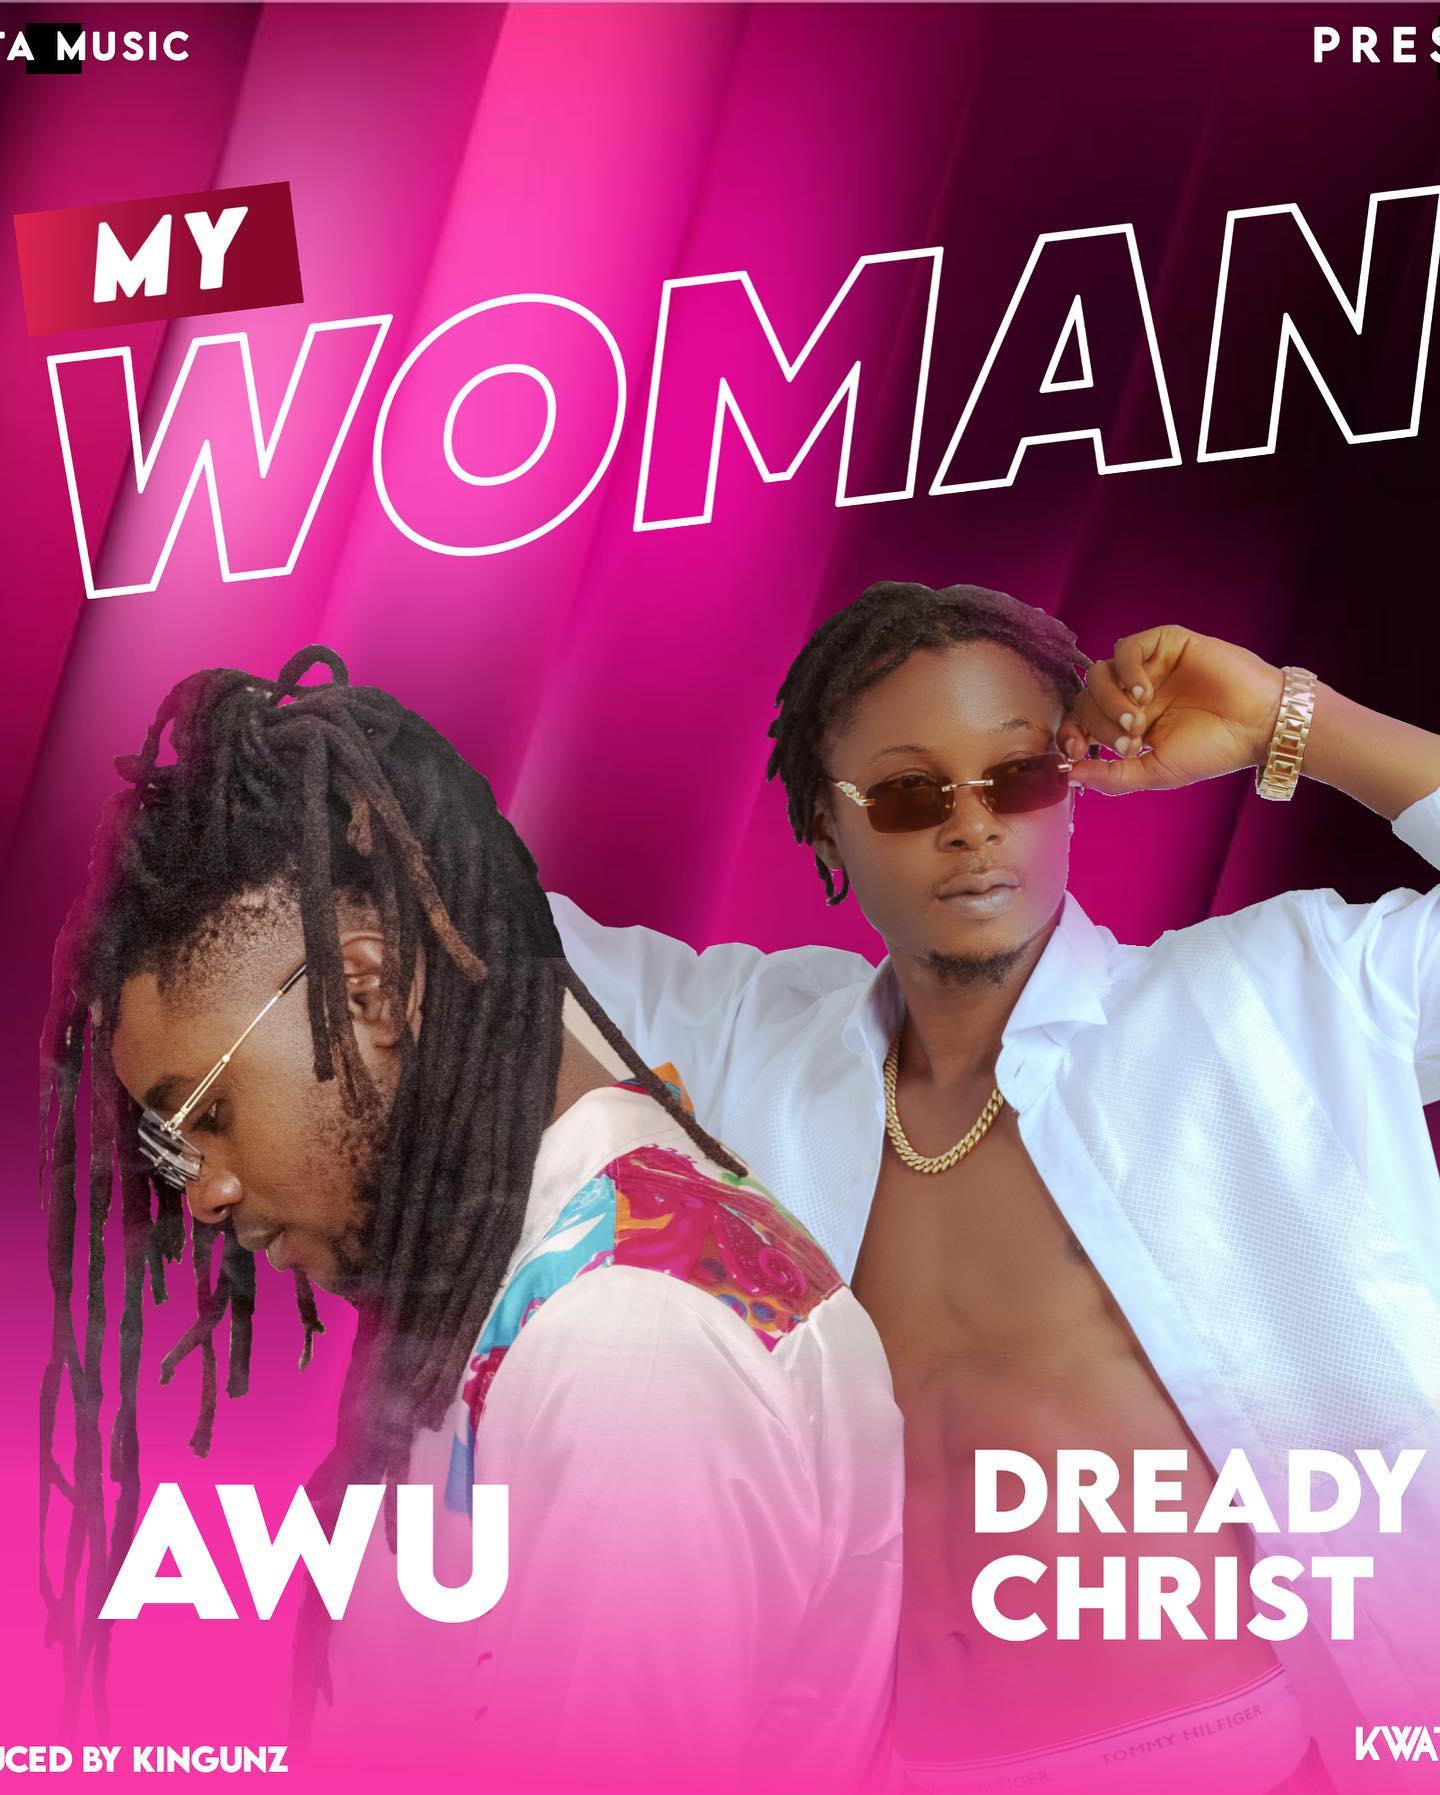 Dready Christ & Awu - "My Woman"